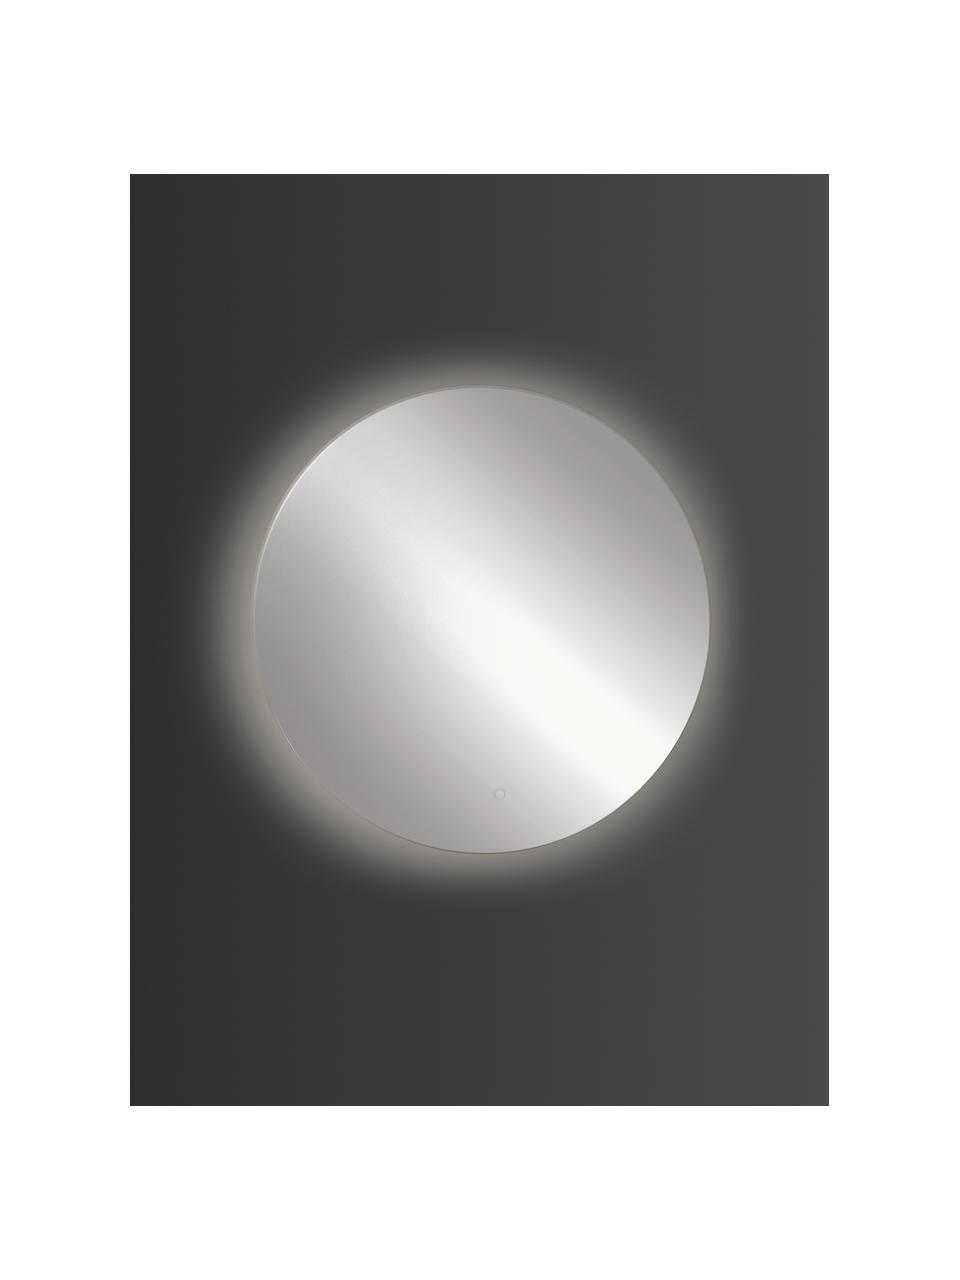 Miroir mural LED rond Galaxy, tailles variées, Verre miroir, Argenté, Ø 60 cm